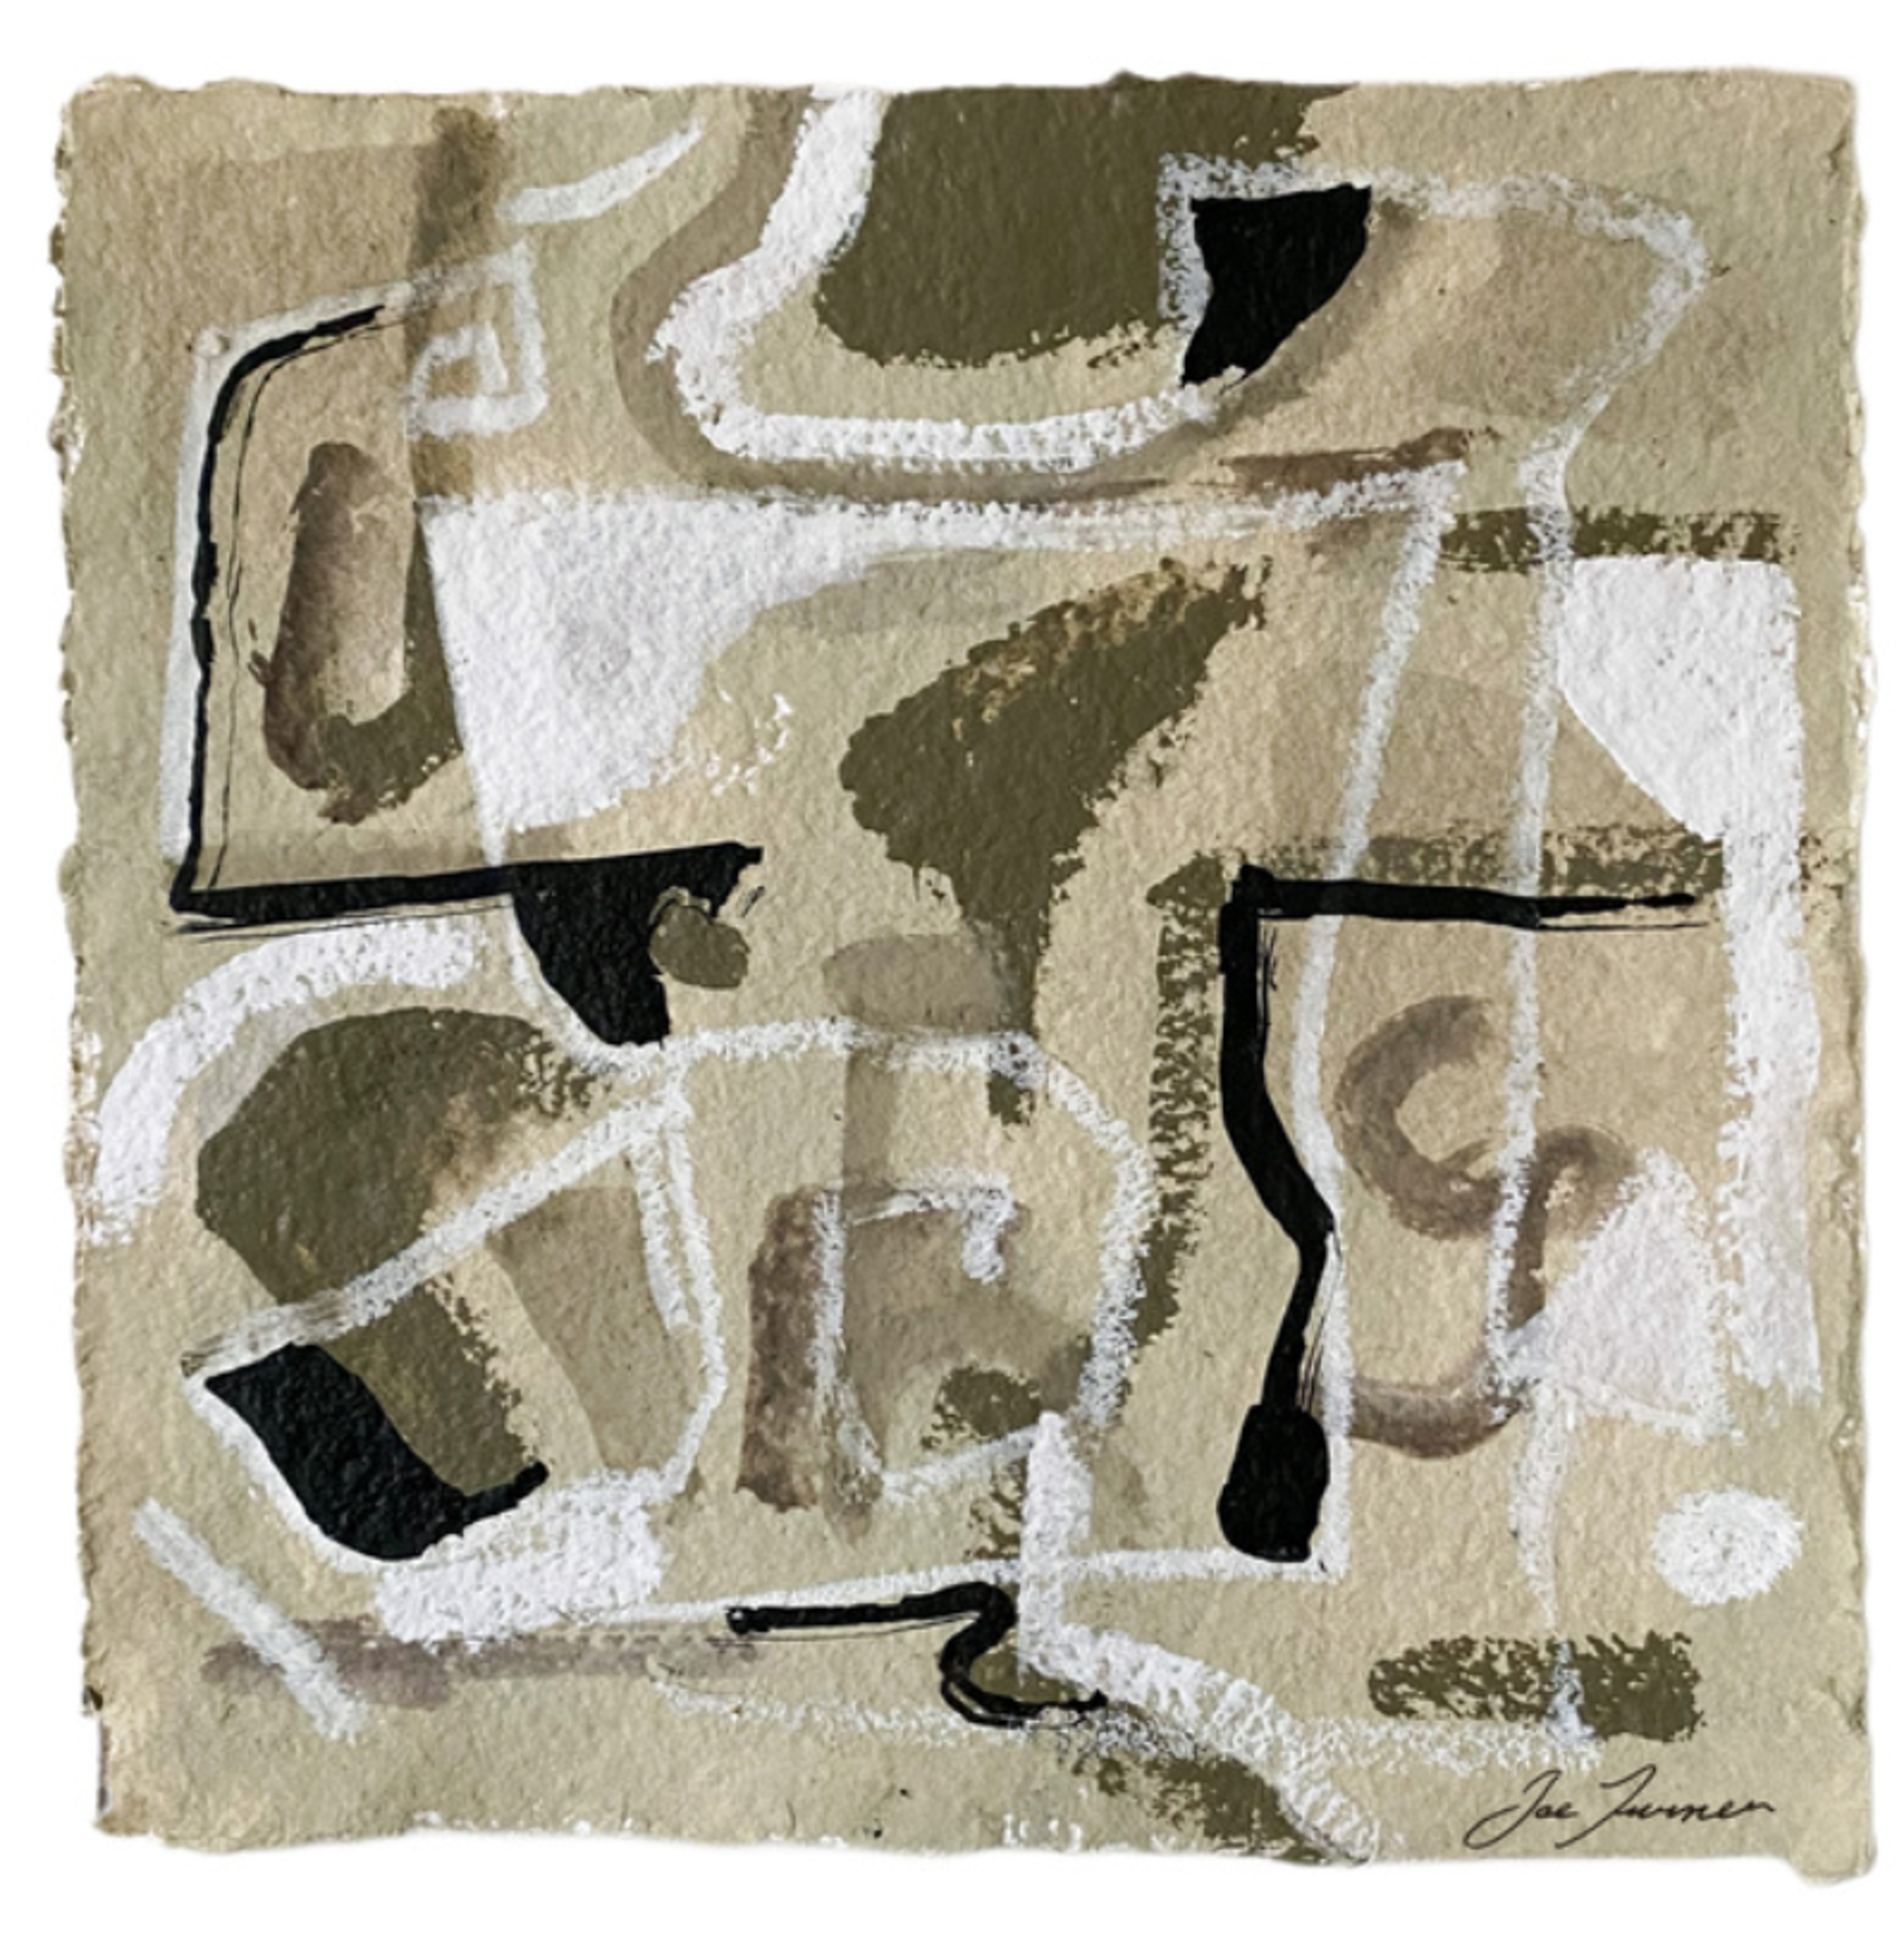 Joe Turner Deckled Paper Piece by Joe Turner